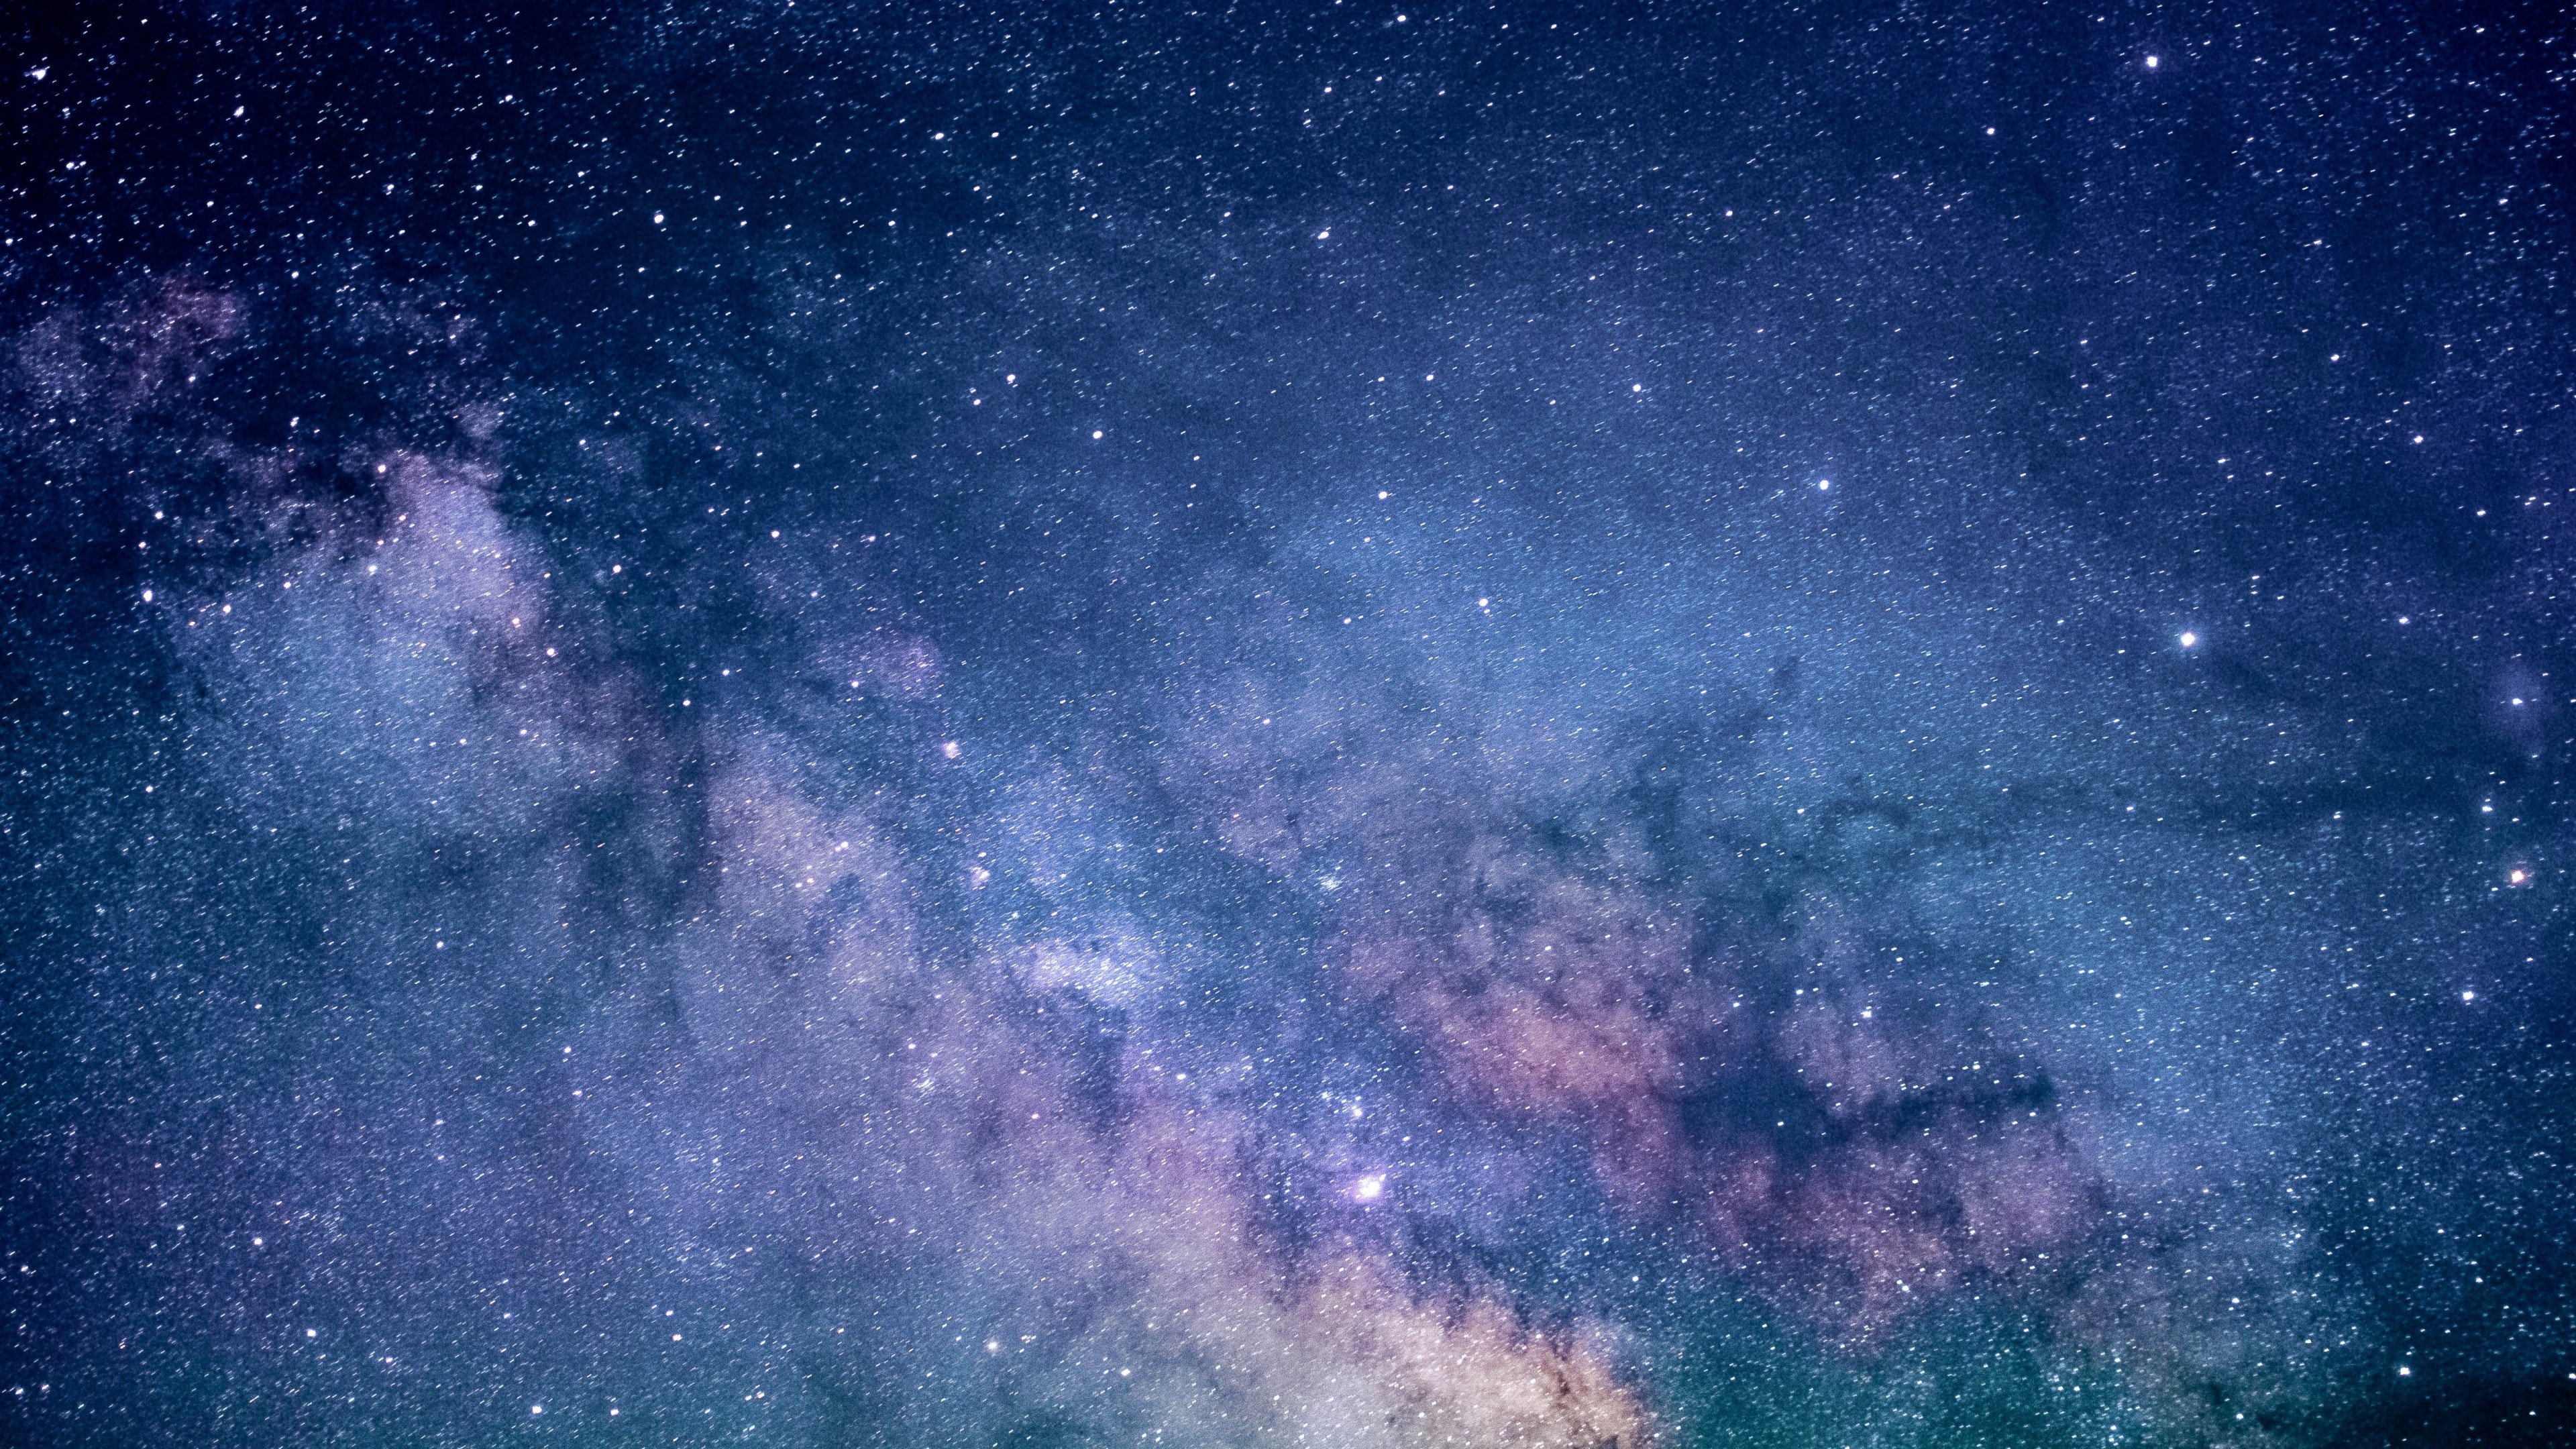 Galaxy Wallpaper 2560 X 1440 , HD Wallpaper & Backgrounds